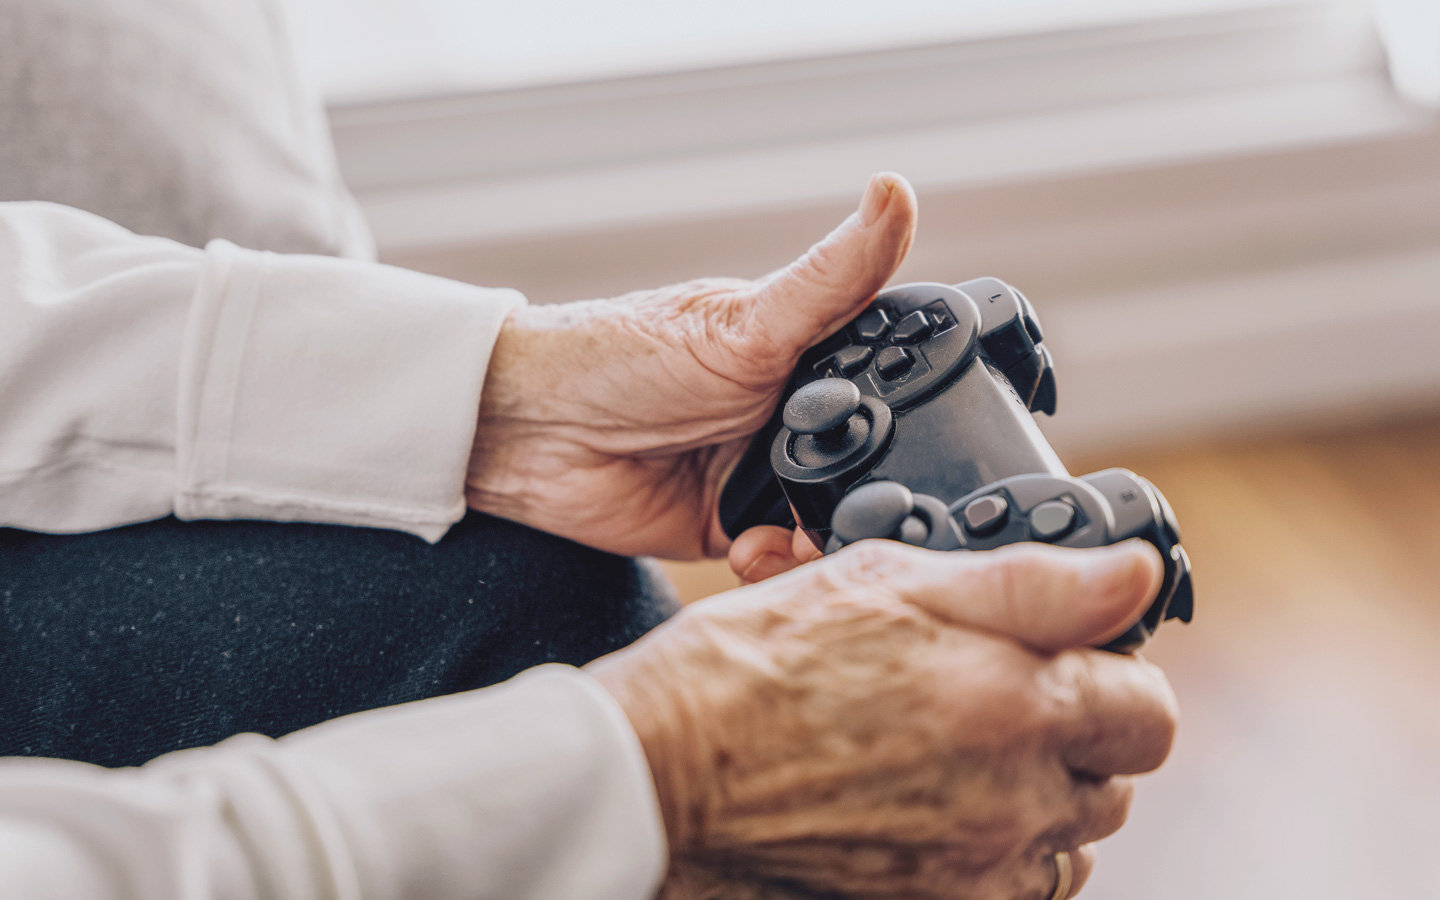 Foto: Zwei Hände eines älteren Menschen halten eine Spielkonsole in der Hand.